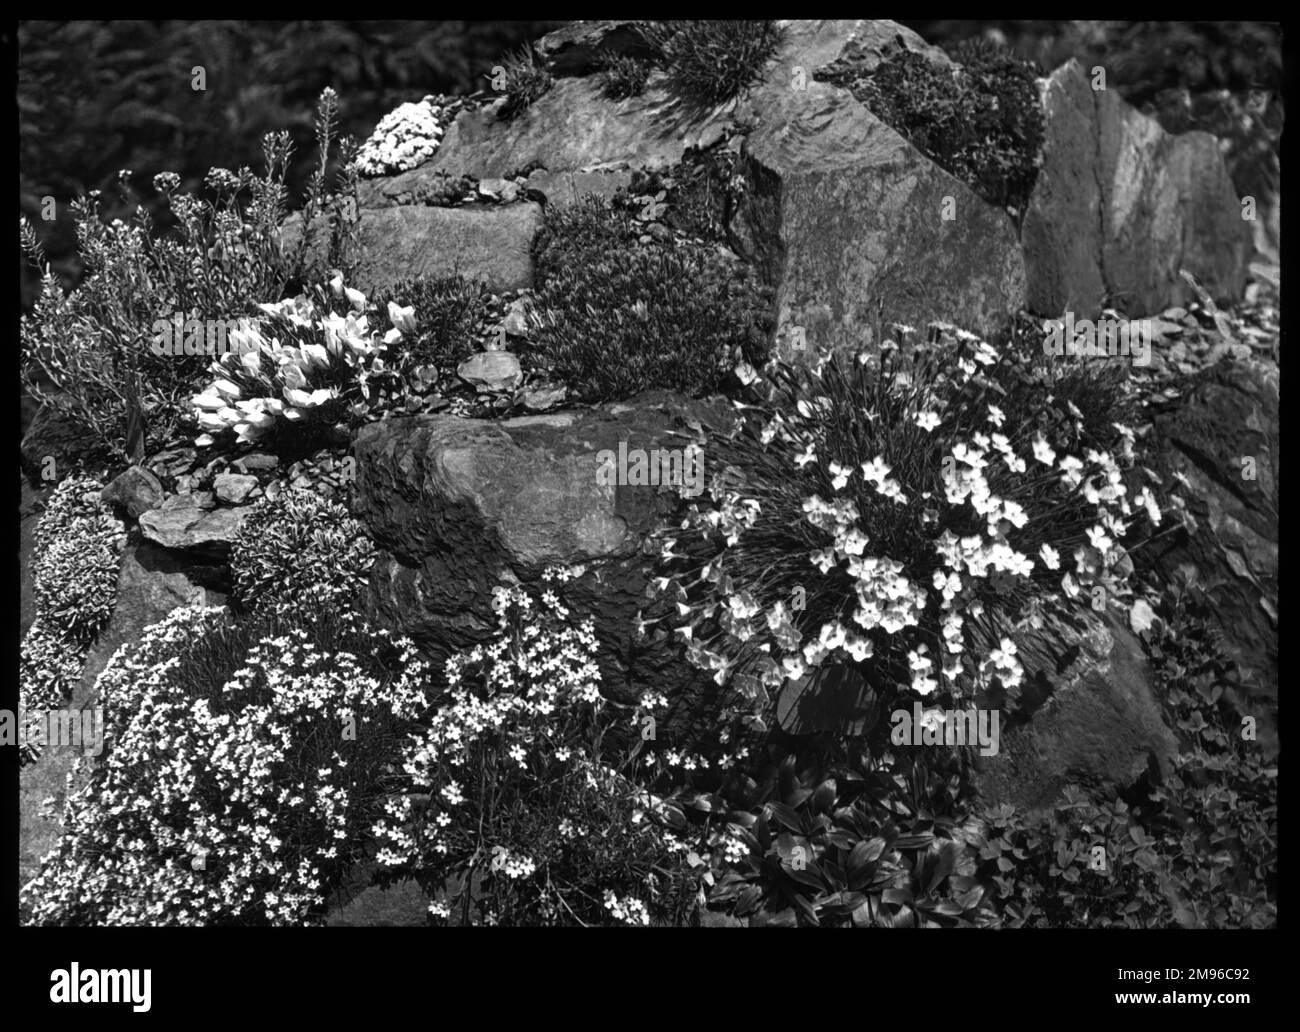 Una serie di Dianthus in un ambiente roccioso. È una pianta fiorita della famiglia delle Caryophyllaceae, con molte specie. Foto Stock